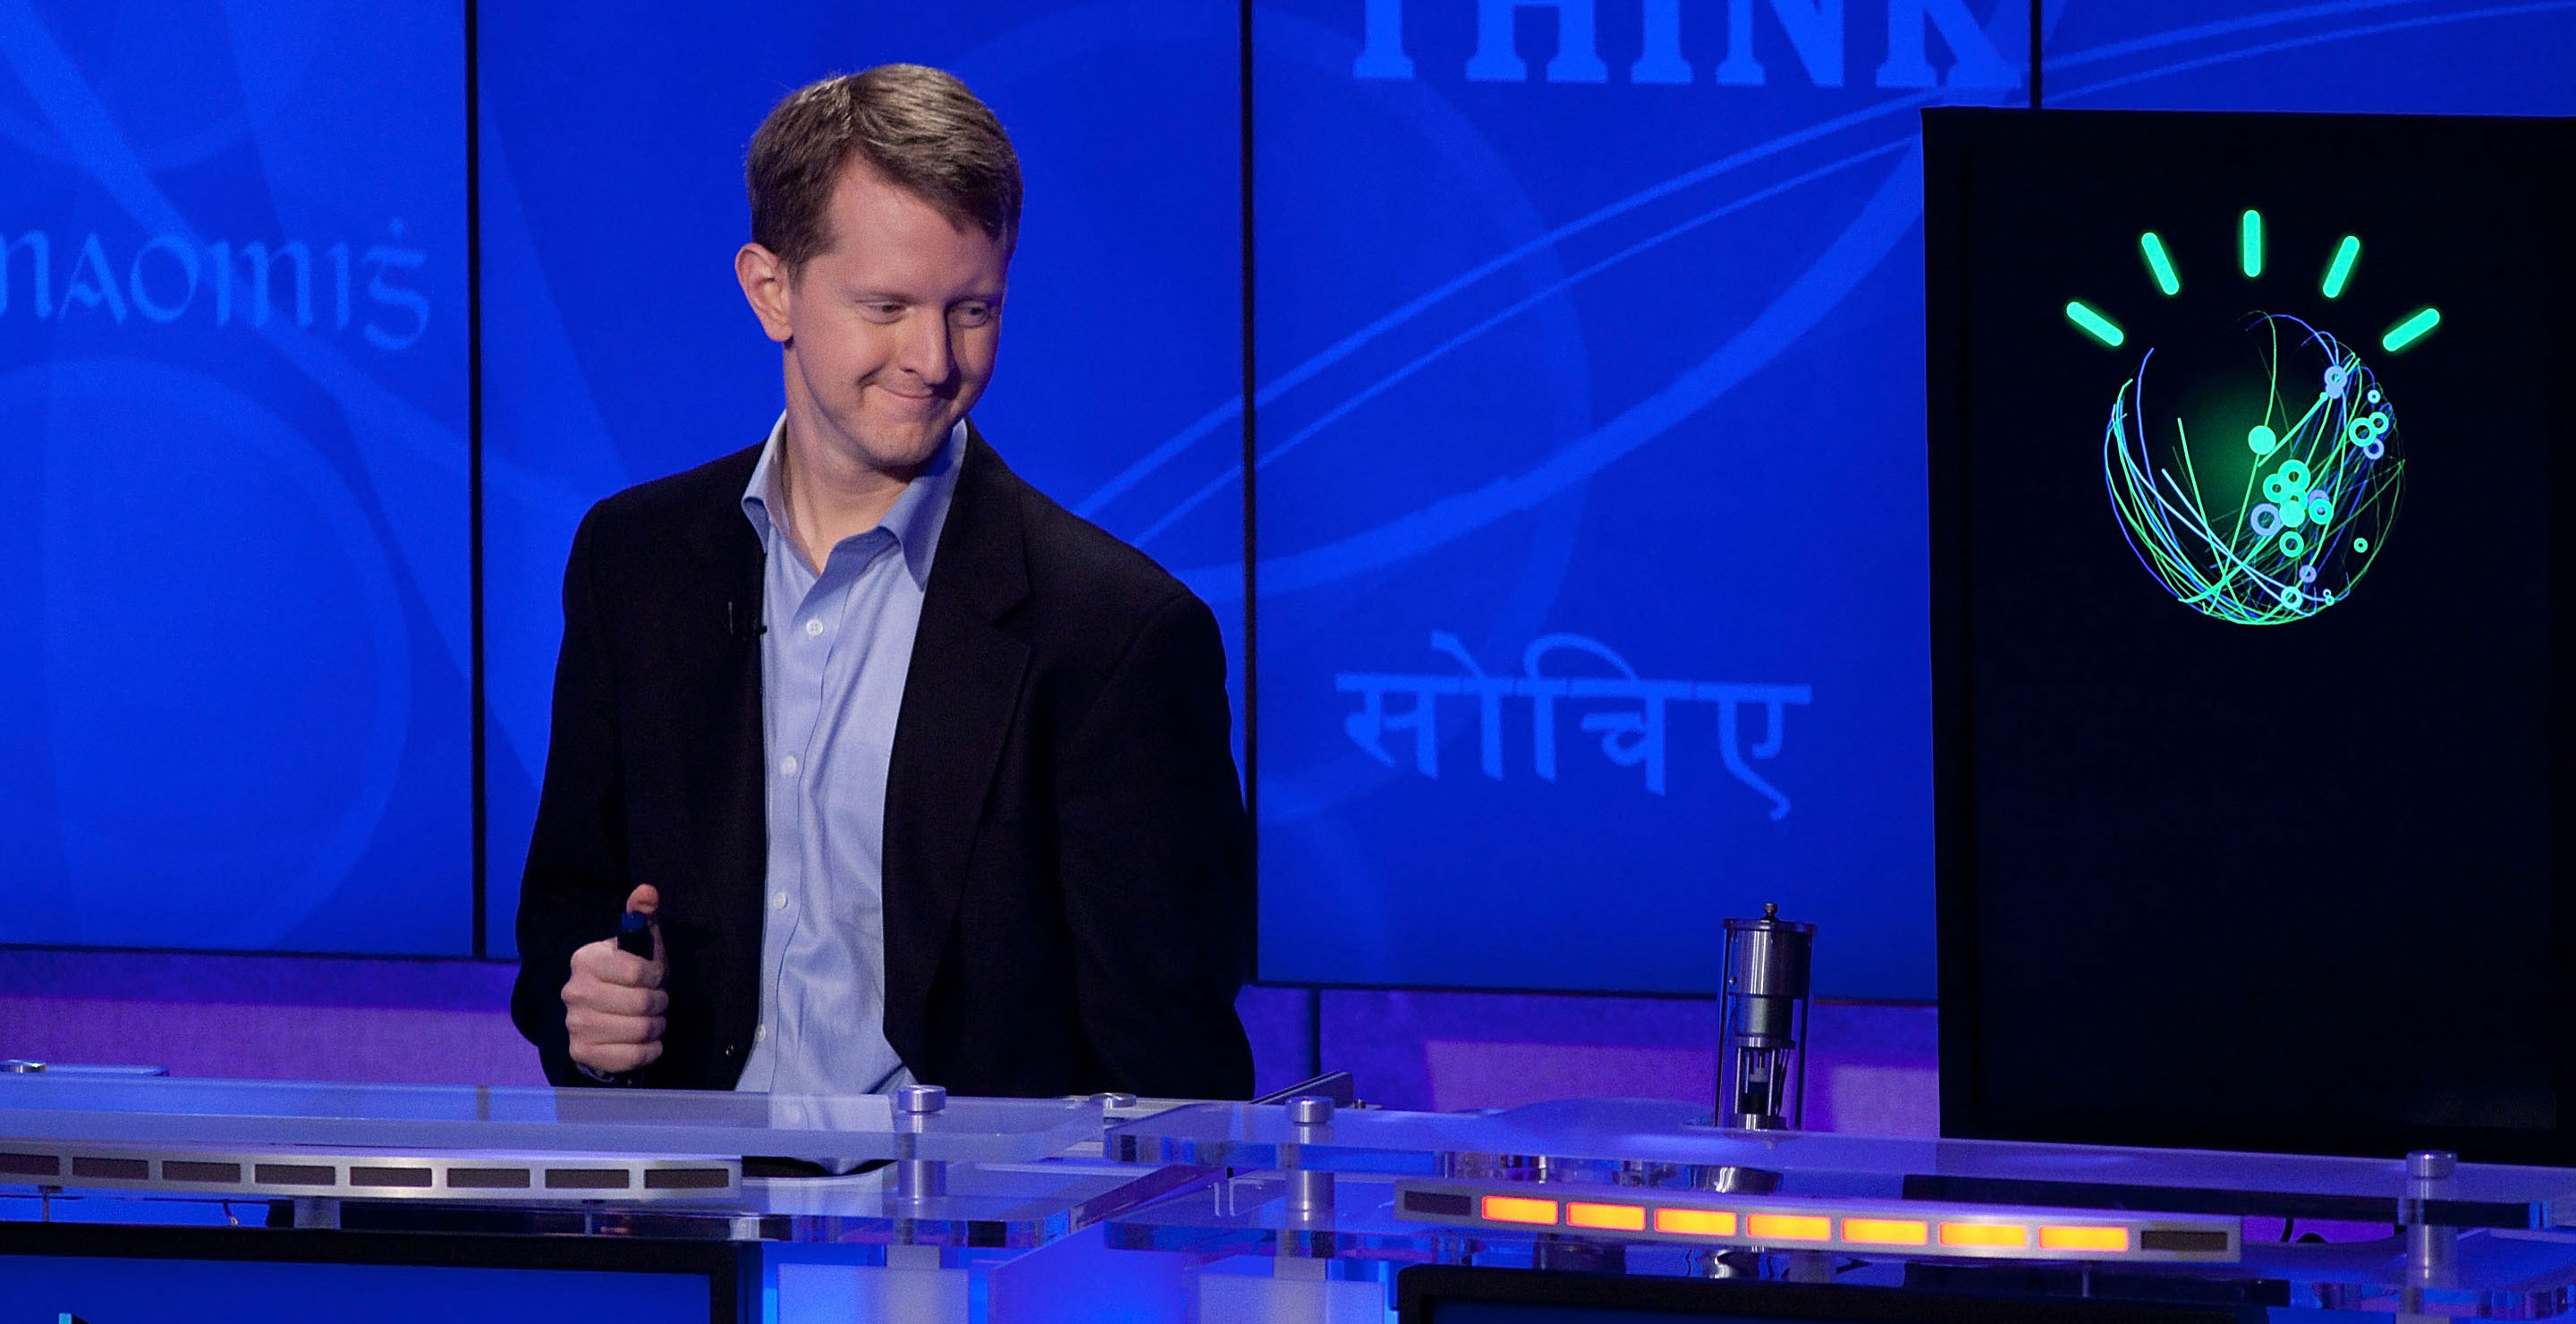 Jeopardy!'s Ken Jennings in the Hot Seat As Ryan Seacrest Arrives